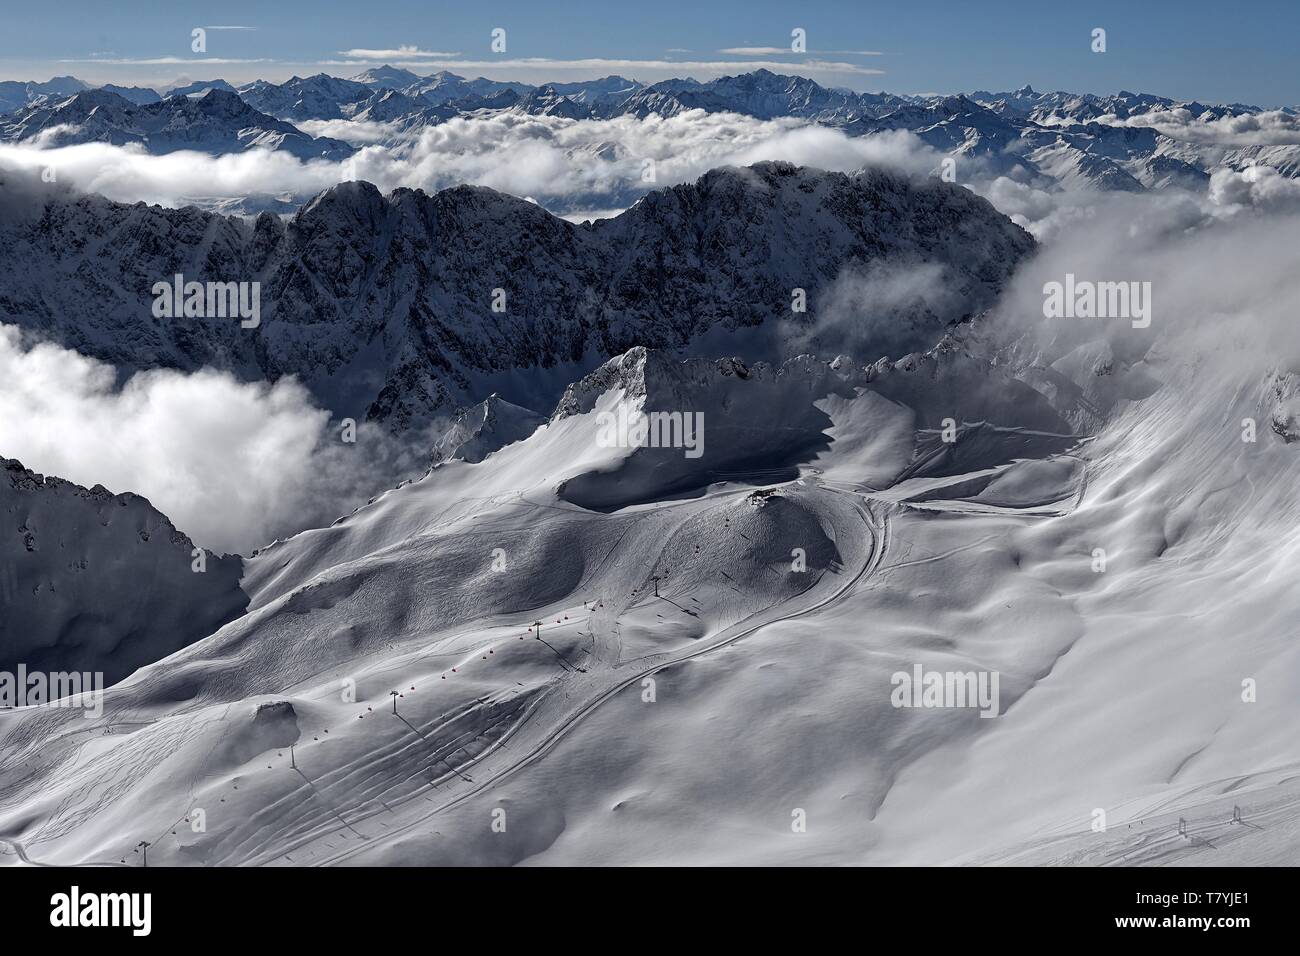 Vor dem winterlichen Alpenpanorama ist der Sessellift Sonnenkar und die Talstation zu erkennen. Der Schnee ist fast unberührt Stock Photo